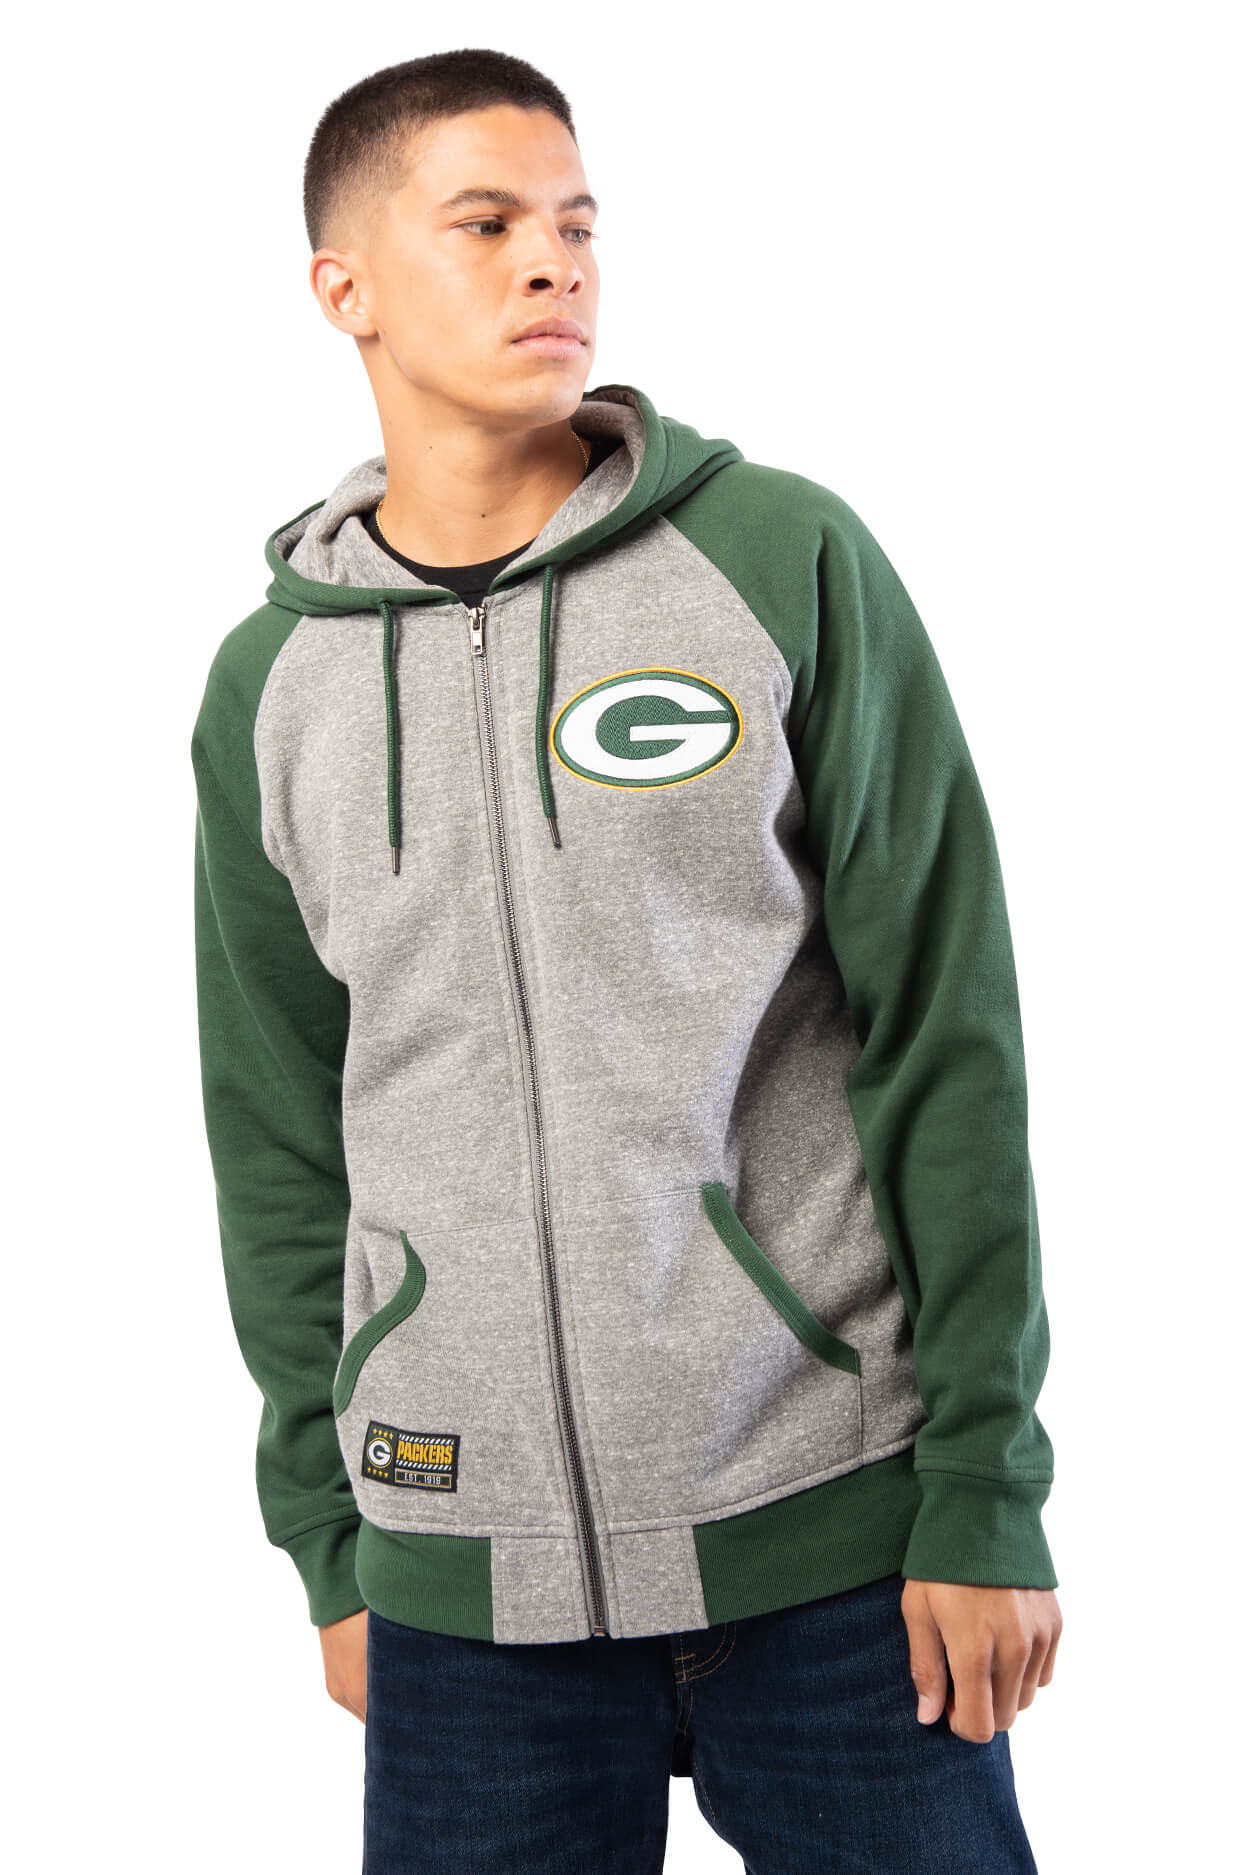 NFL Green Bay Packers Men's Full Zip Hoodie|Green Bay Packers